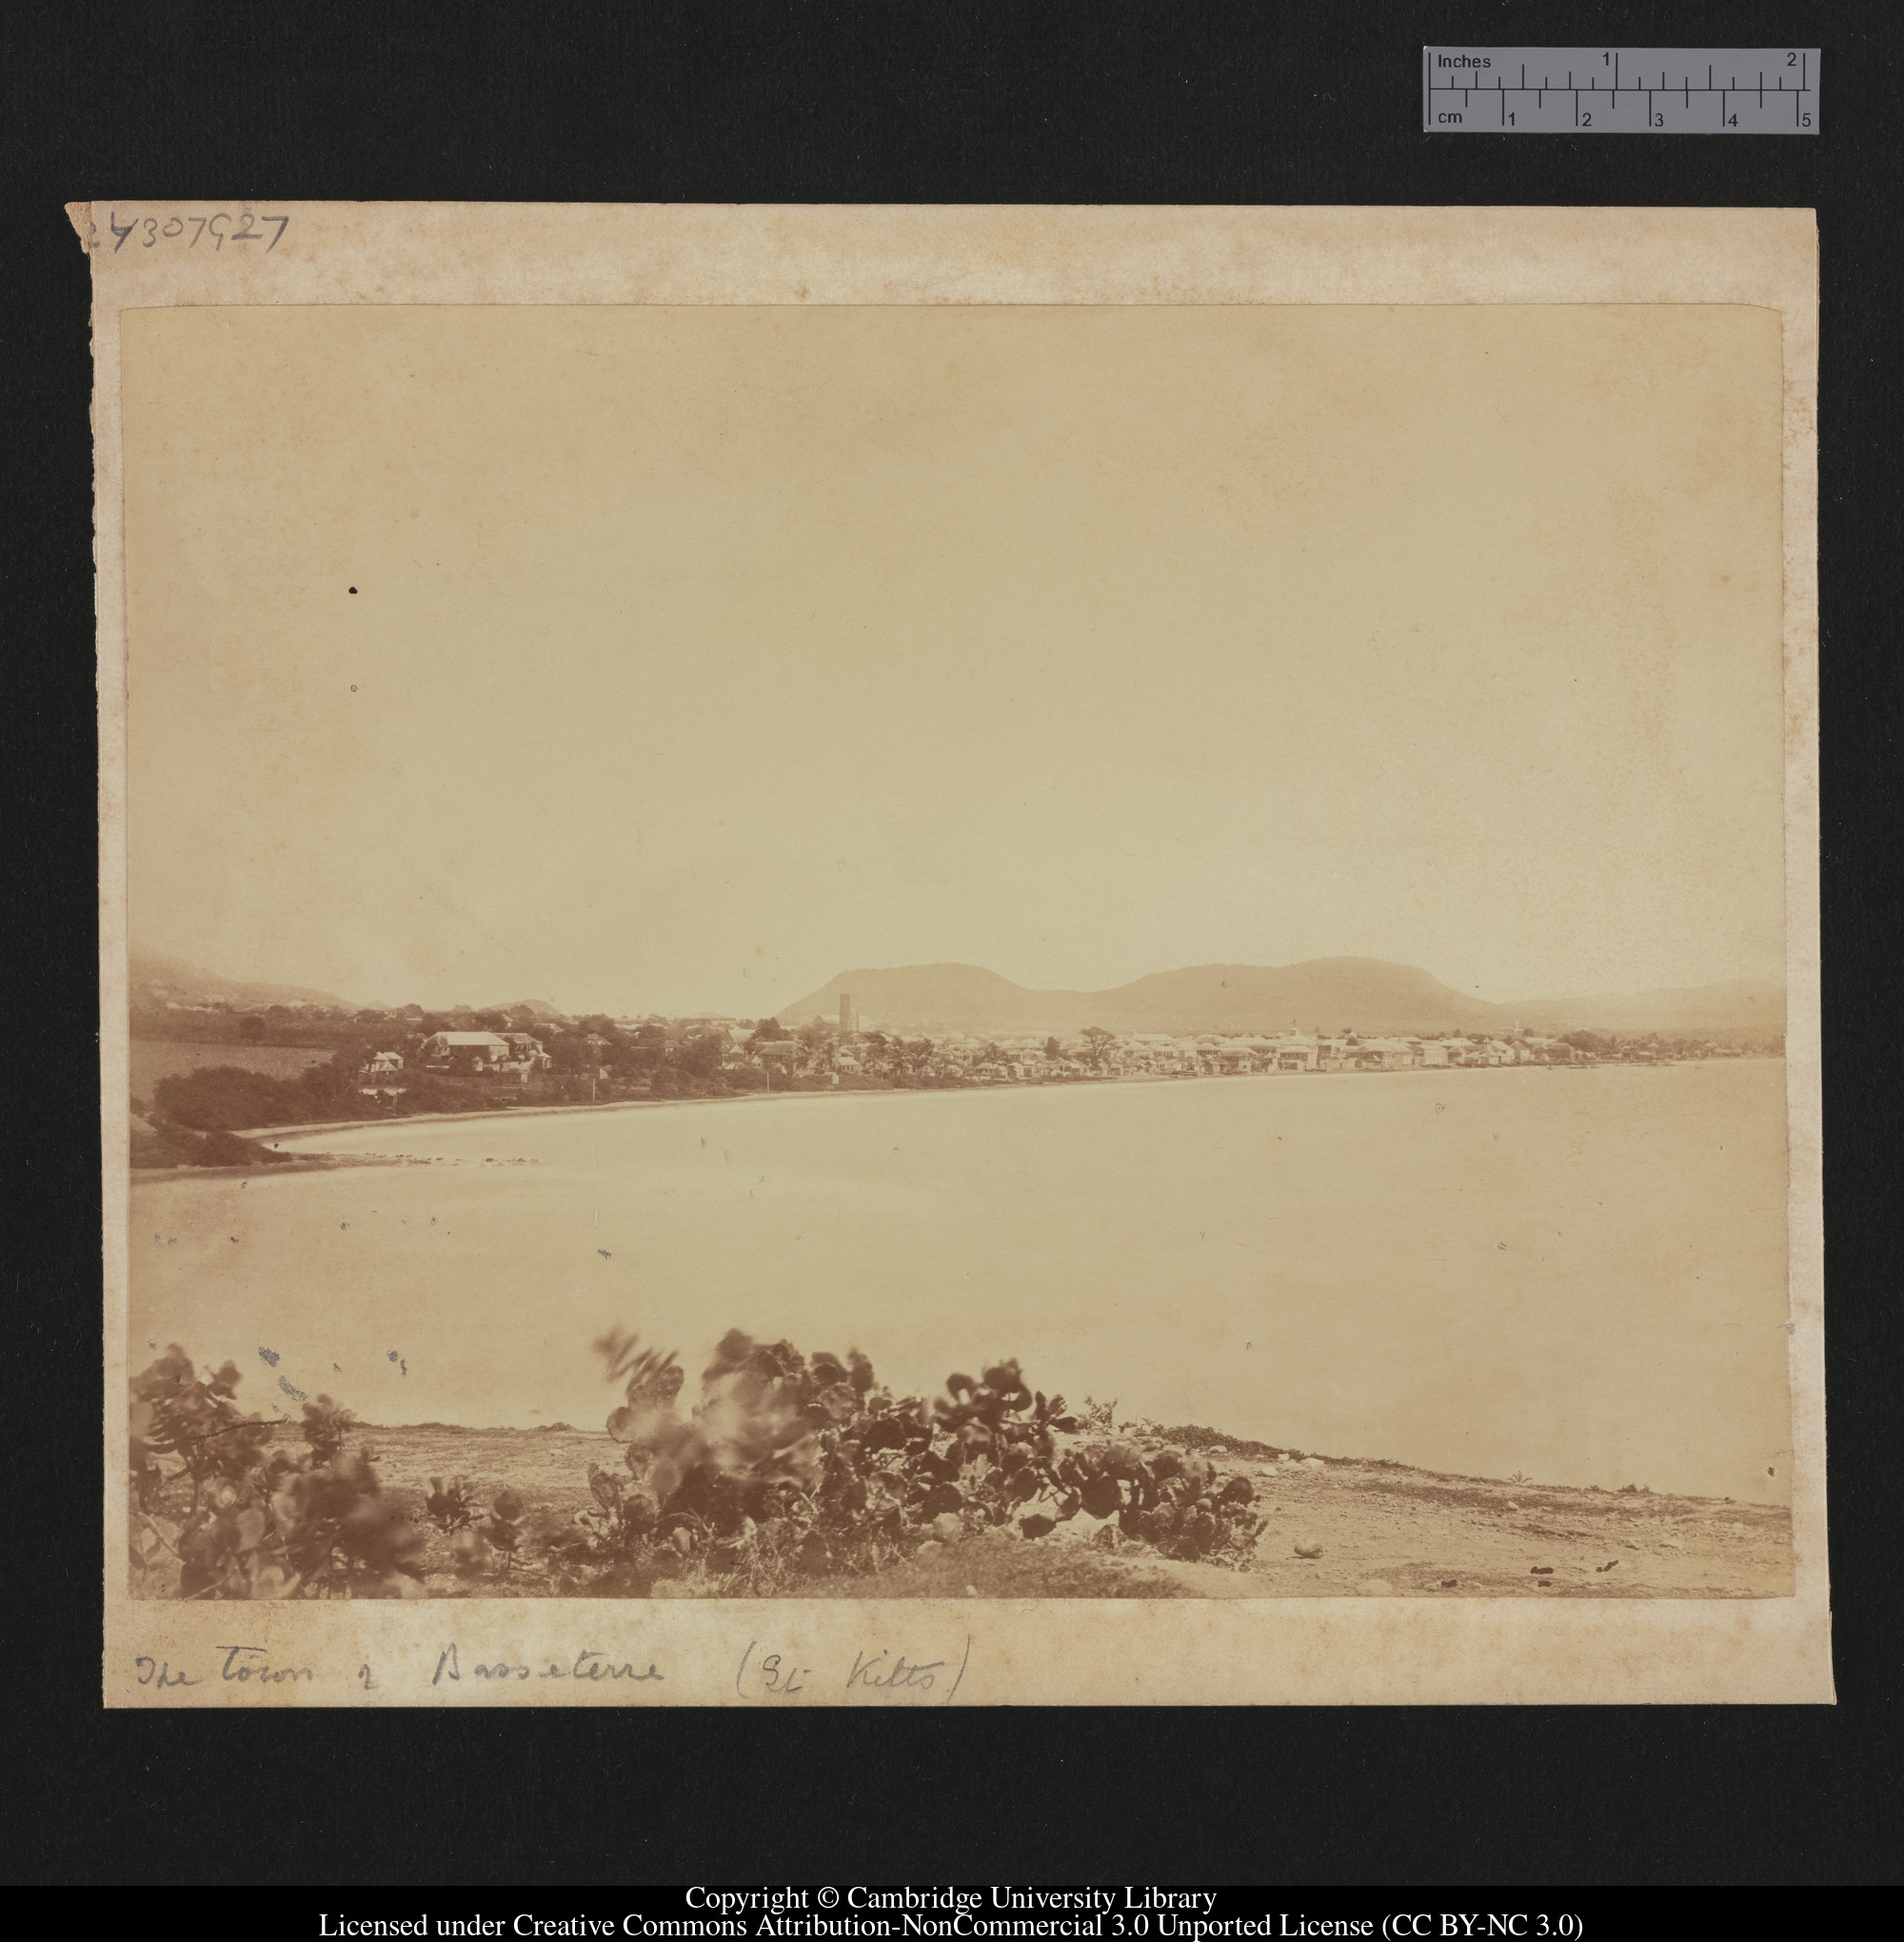 The town of Basseterra, St Kitts [i.e. Basseterre, Saint Kitts], 1879 - 1913